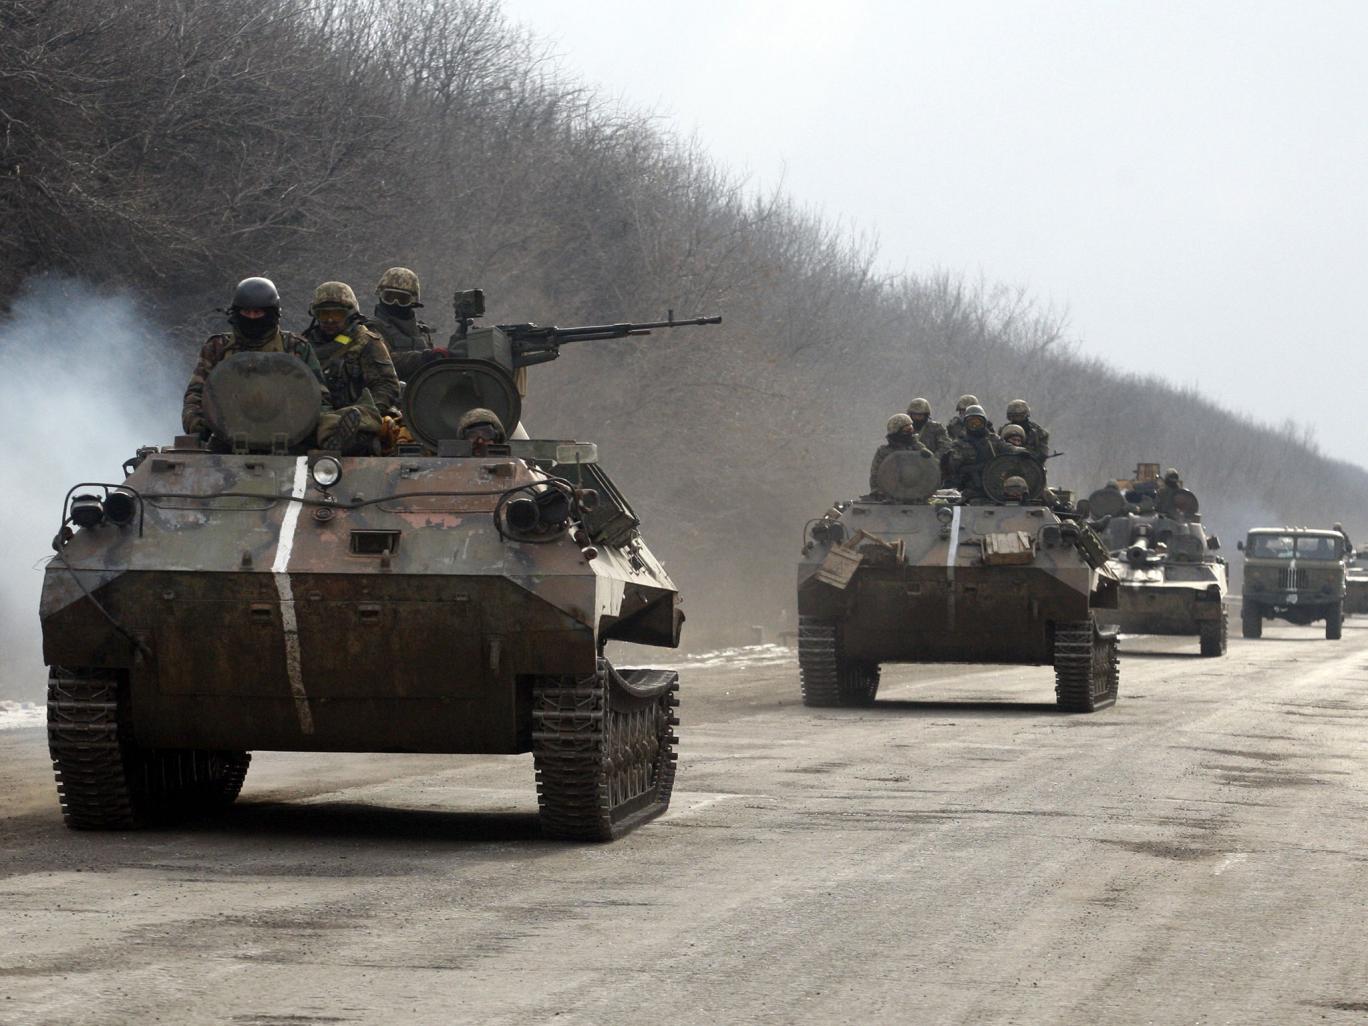 Повідомлення газети The Independent про участь українських військових у боротьбі з ISIS в Сирії - фейк